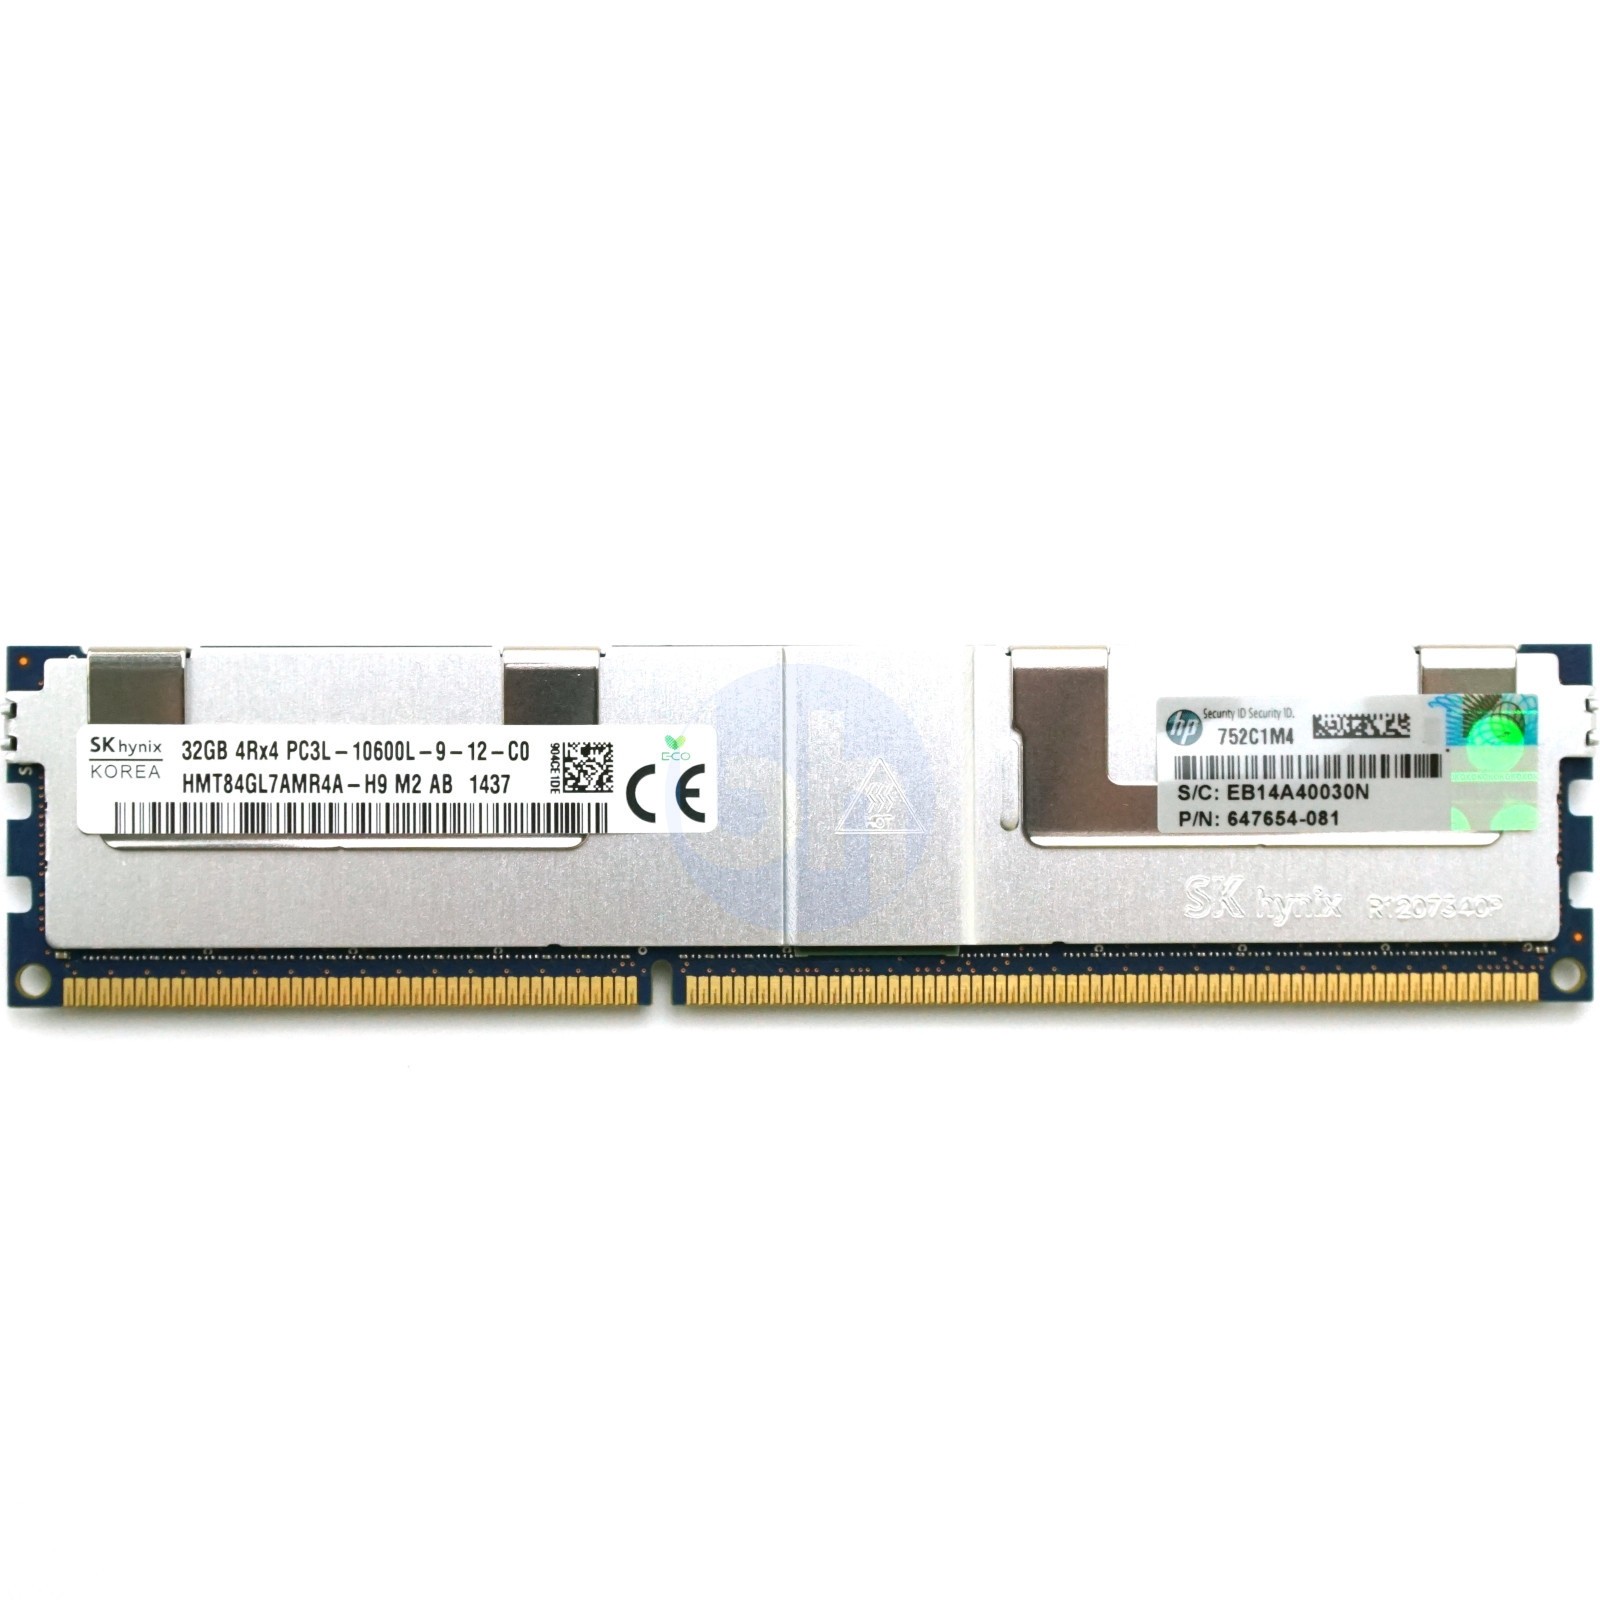 HP (647654-081) - 32GB PC3L-10600L (4RX4, DDR3-1333MHz)